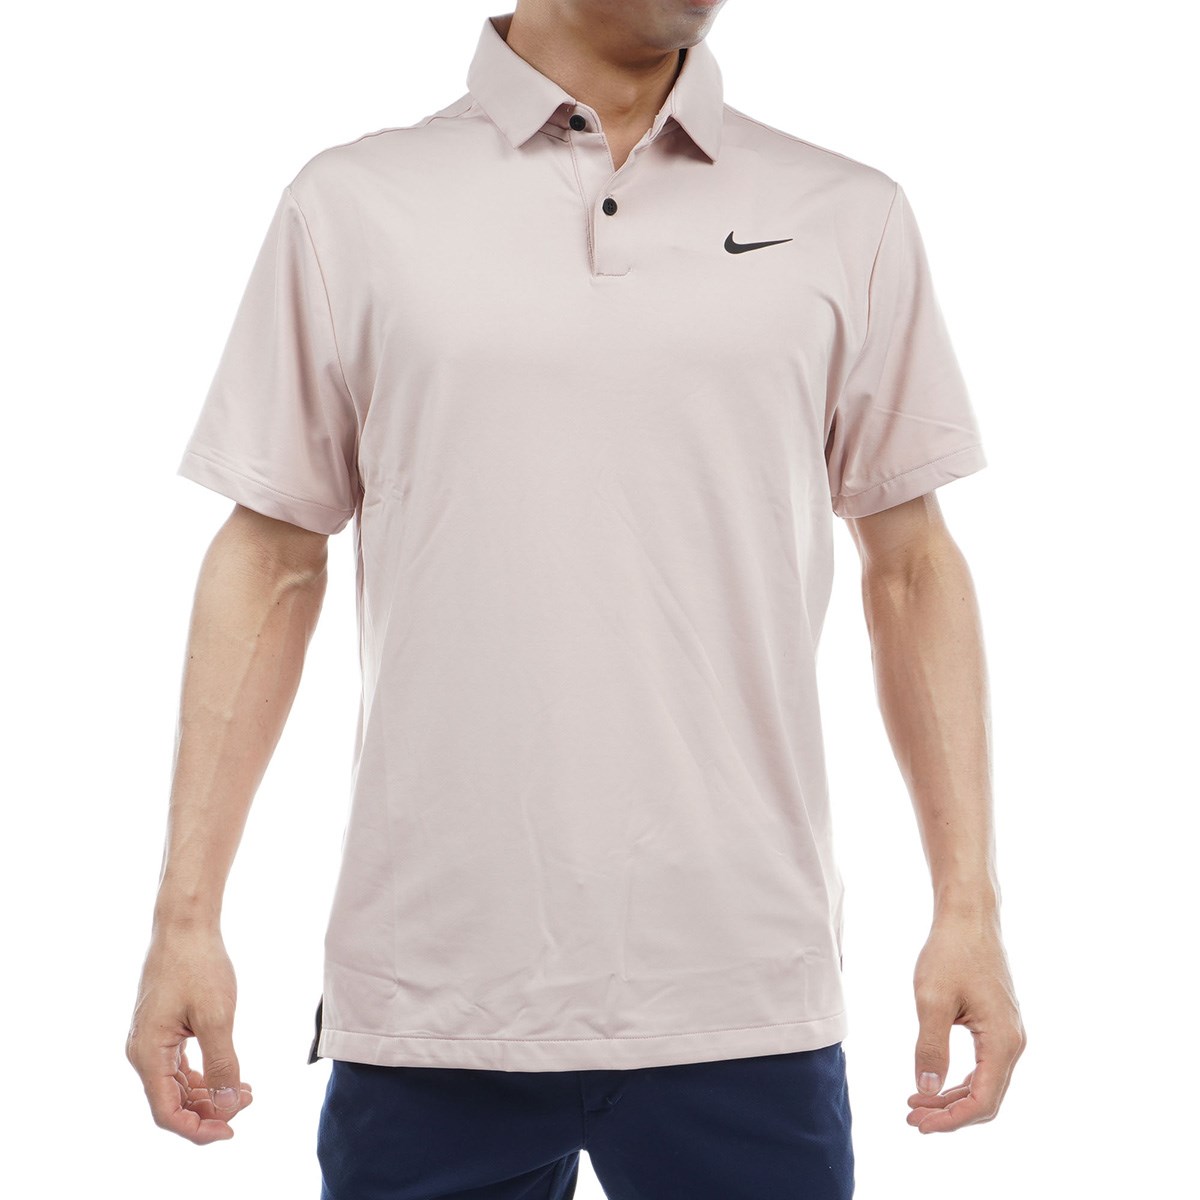 ナイキ(nike) ゴルフ メンズポロシャツ 通販・人気ランキング